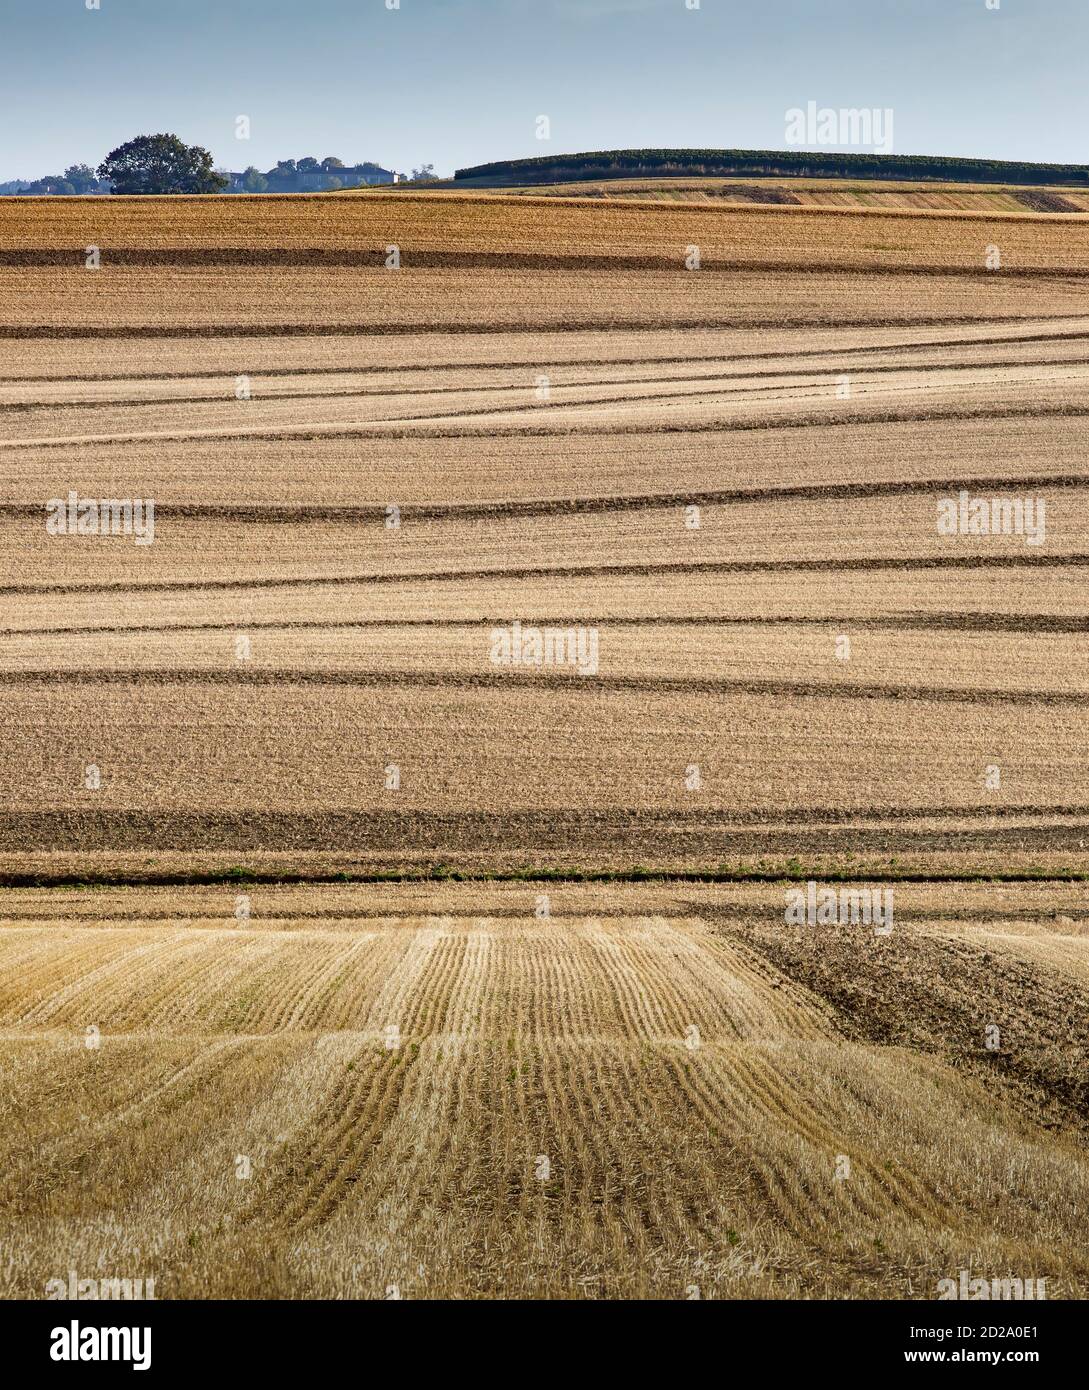 Un paisaje agrícola de colinas suavemente onduladas que son típicas de la región de Gers del suroeste de Francia. Foto de stock